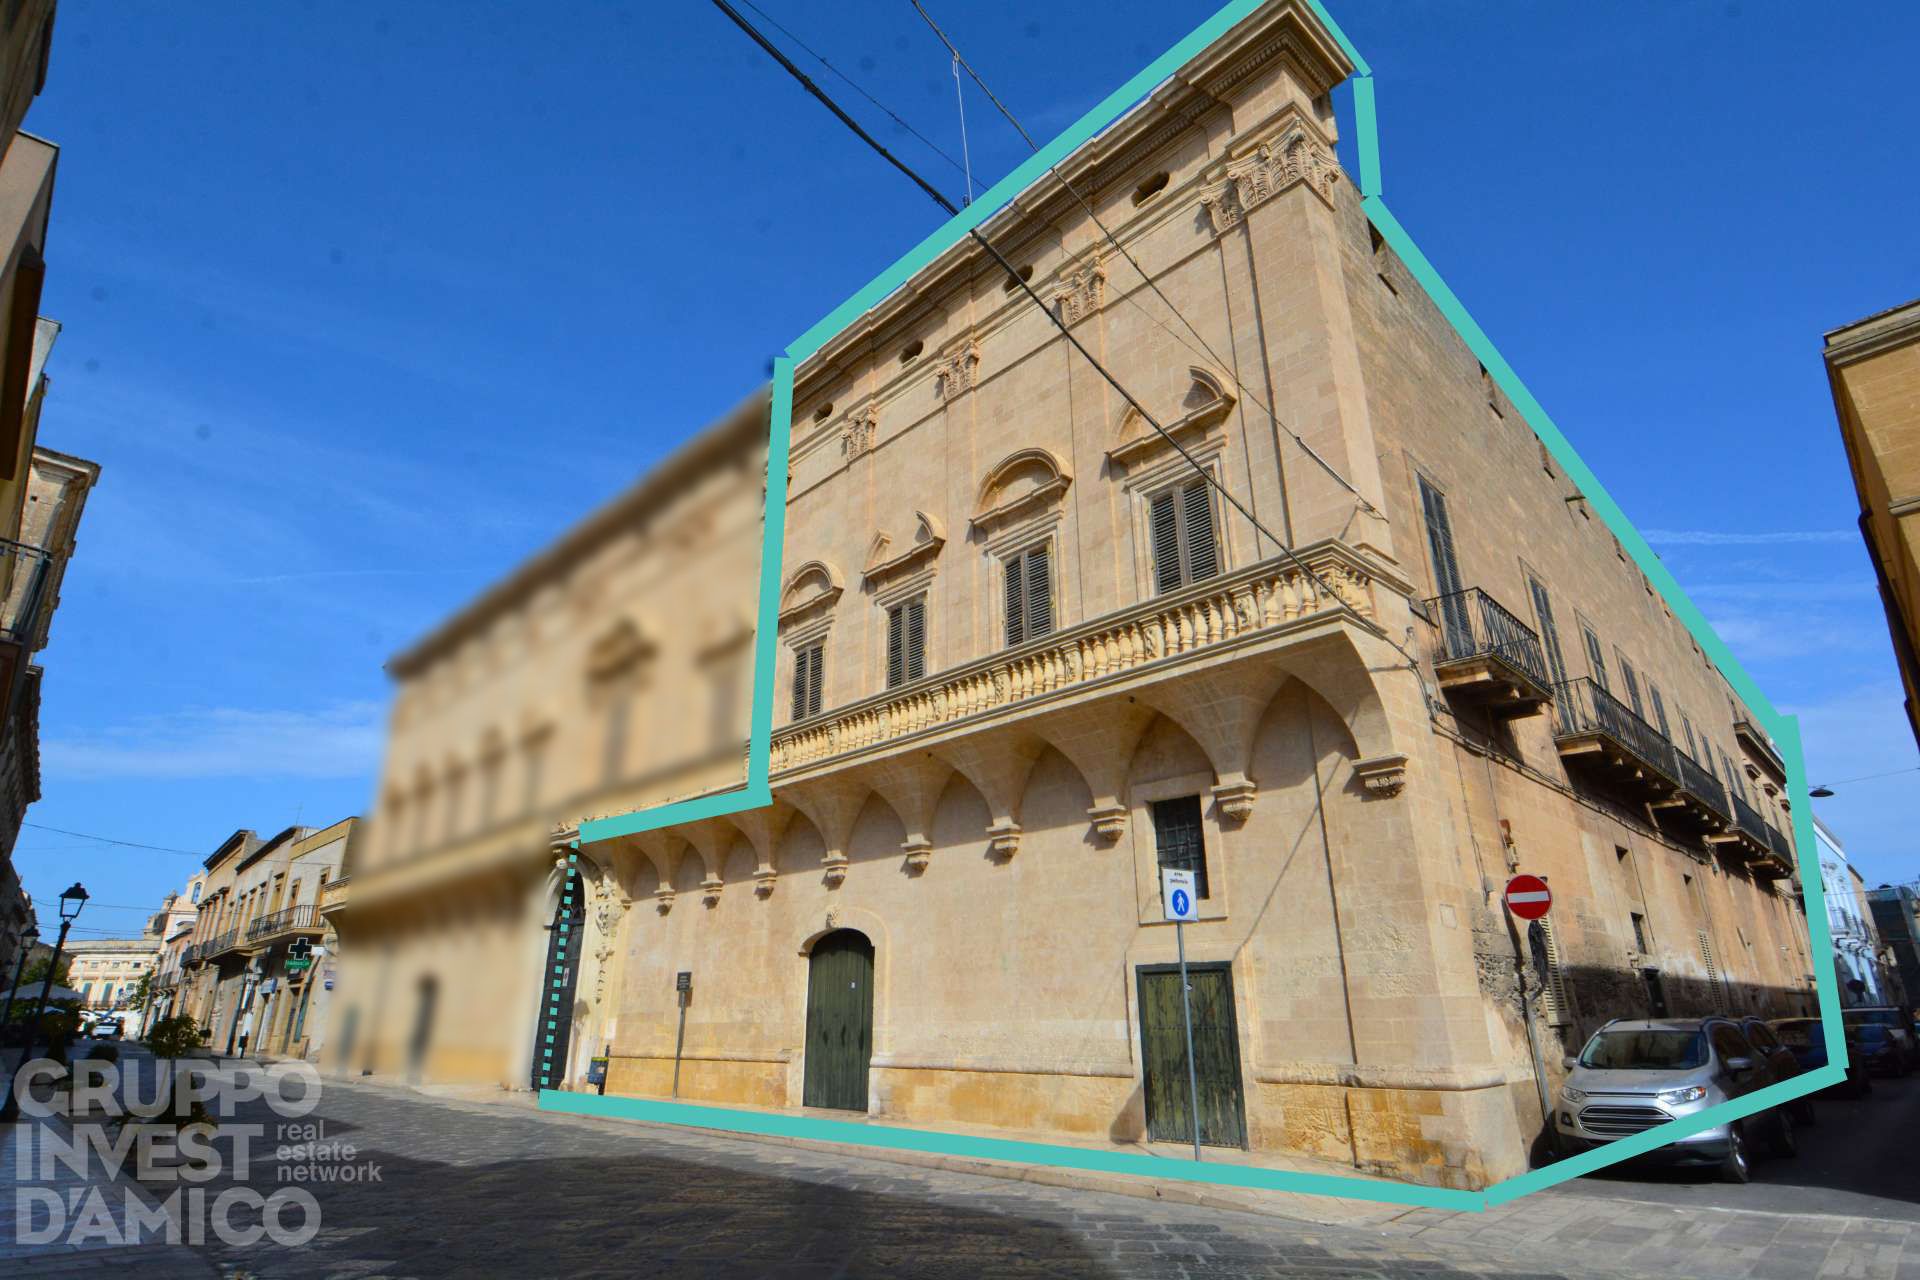 Vendita Palazzo Storico Francavilla Fontana | luxforsale.it